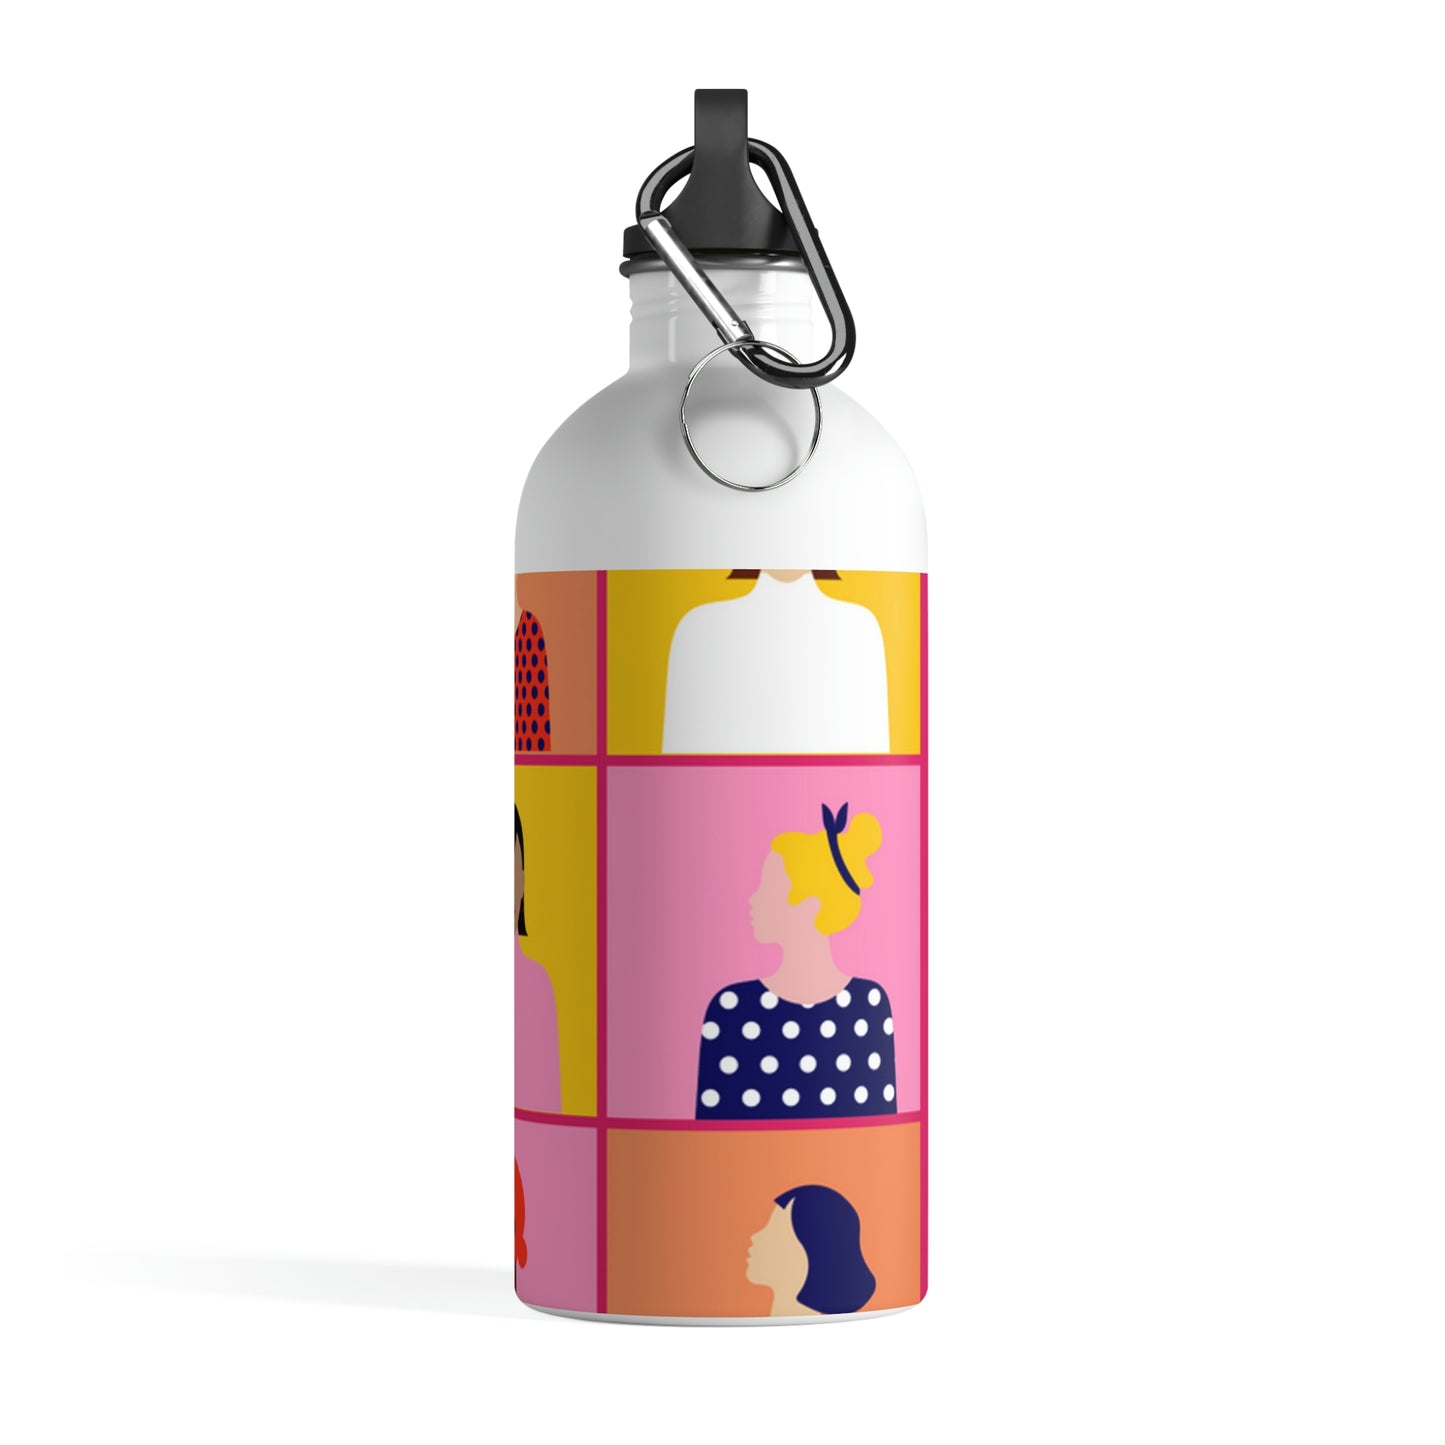 Cubics Girly Avatars Promotional FemTape Stainless Steel Water Bottle